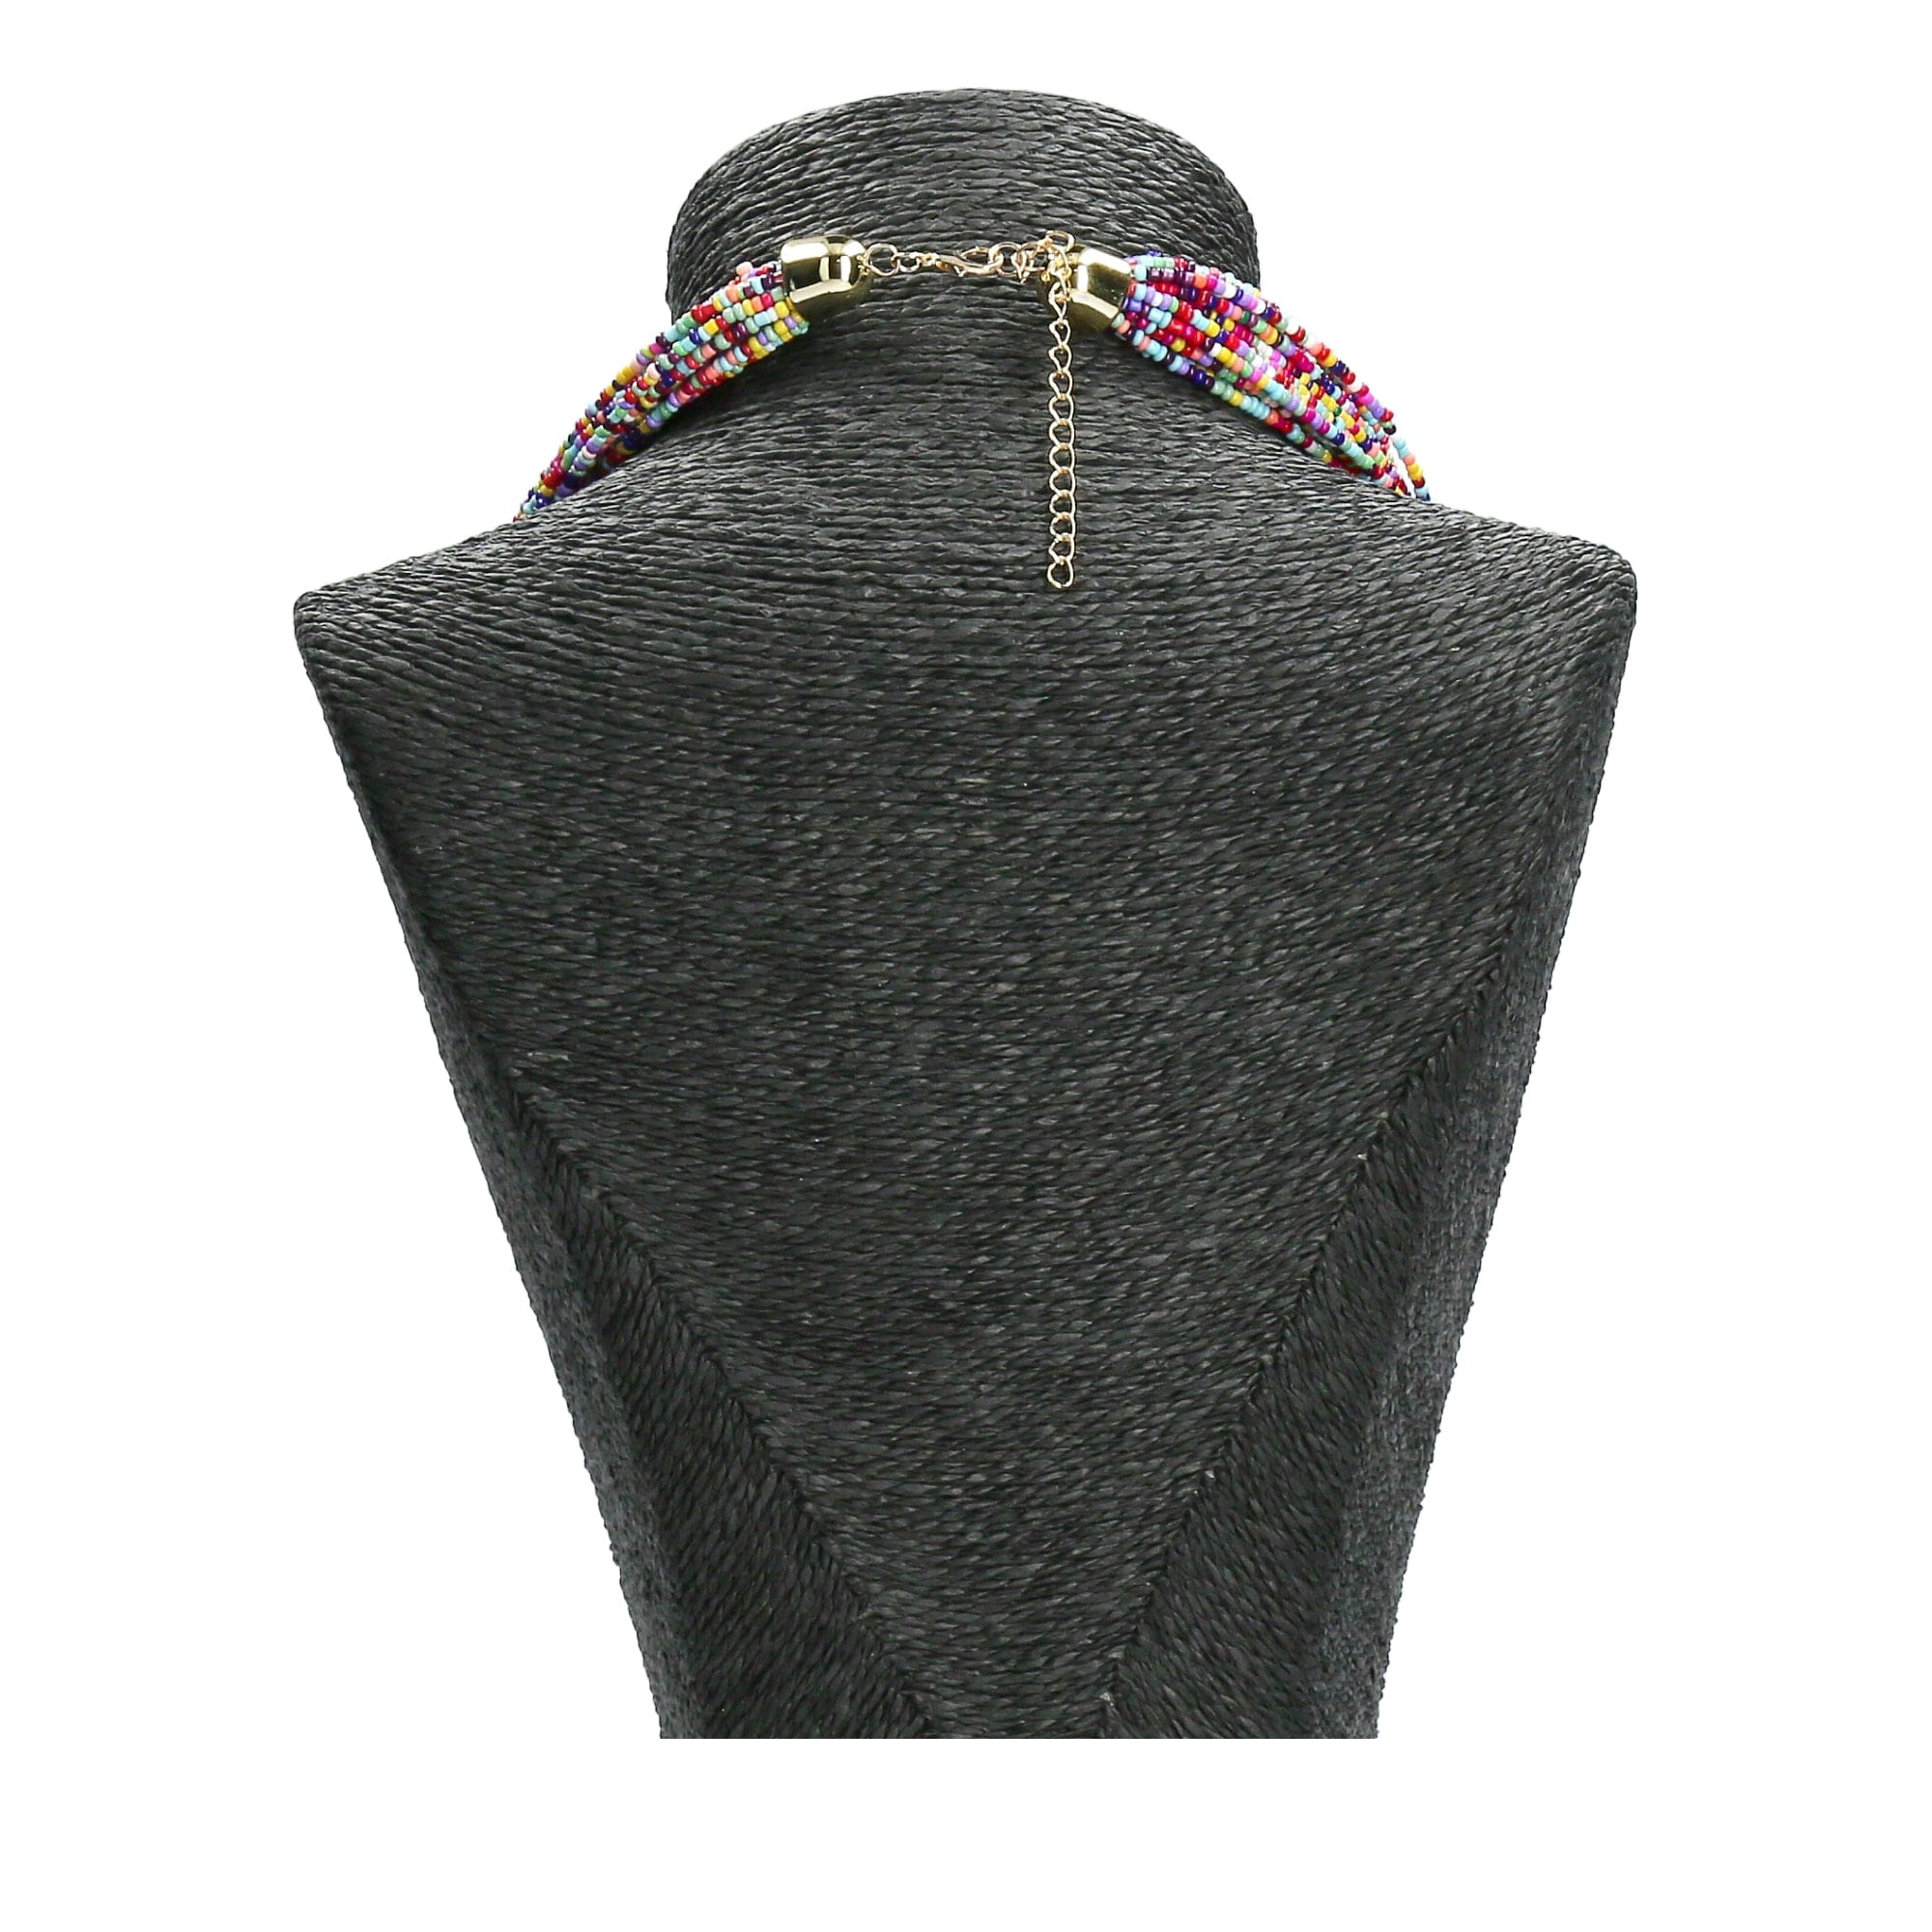 Dawa jewelry set - Necklace